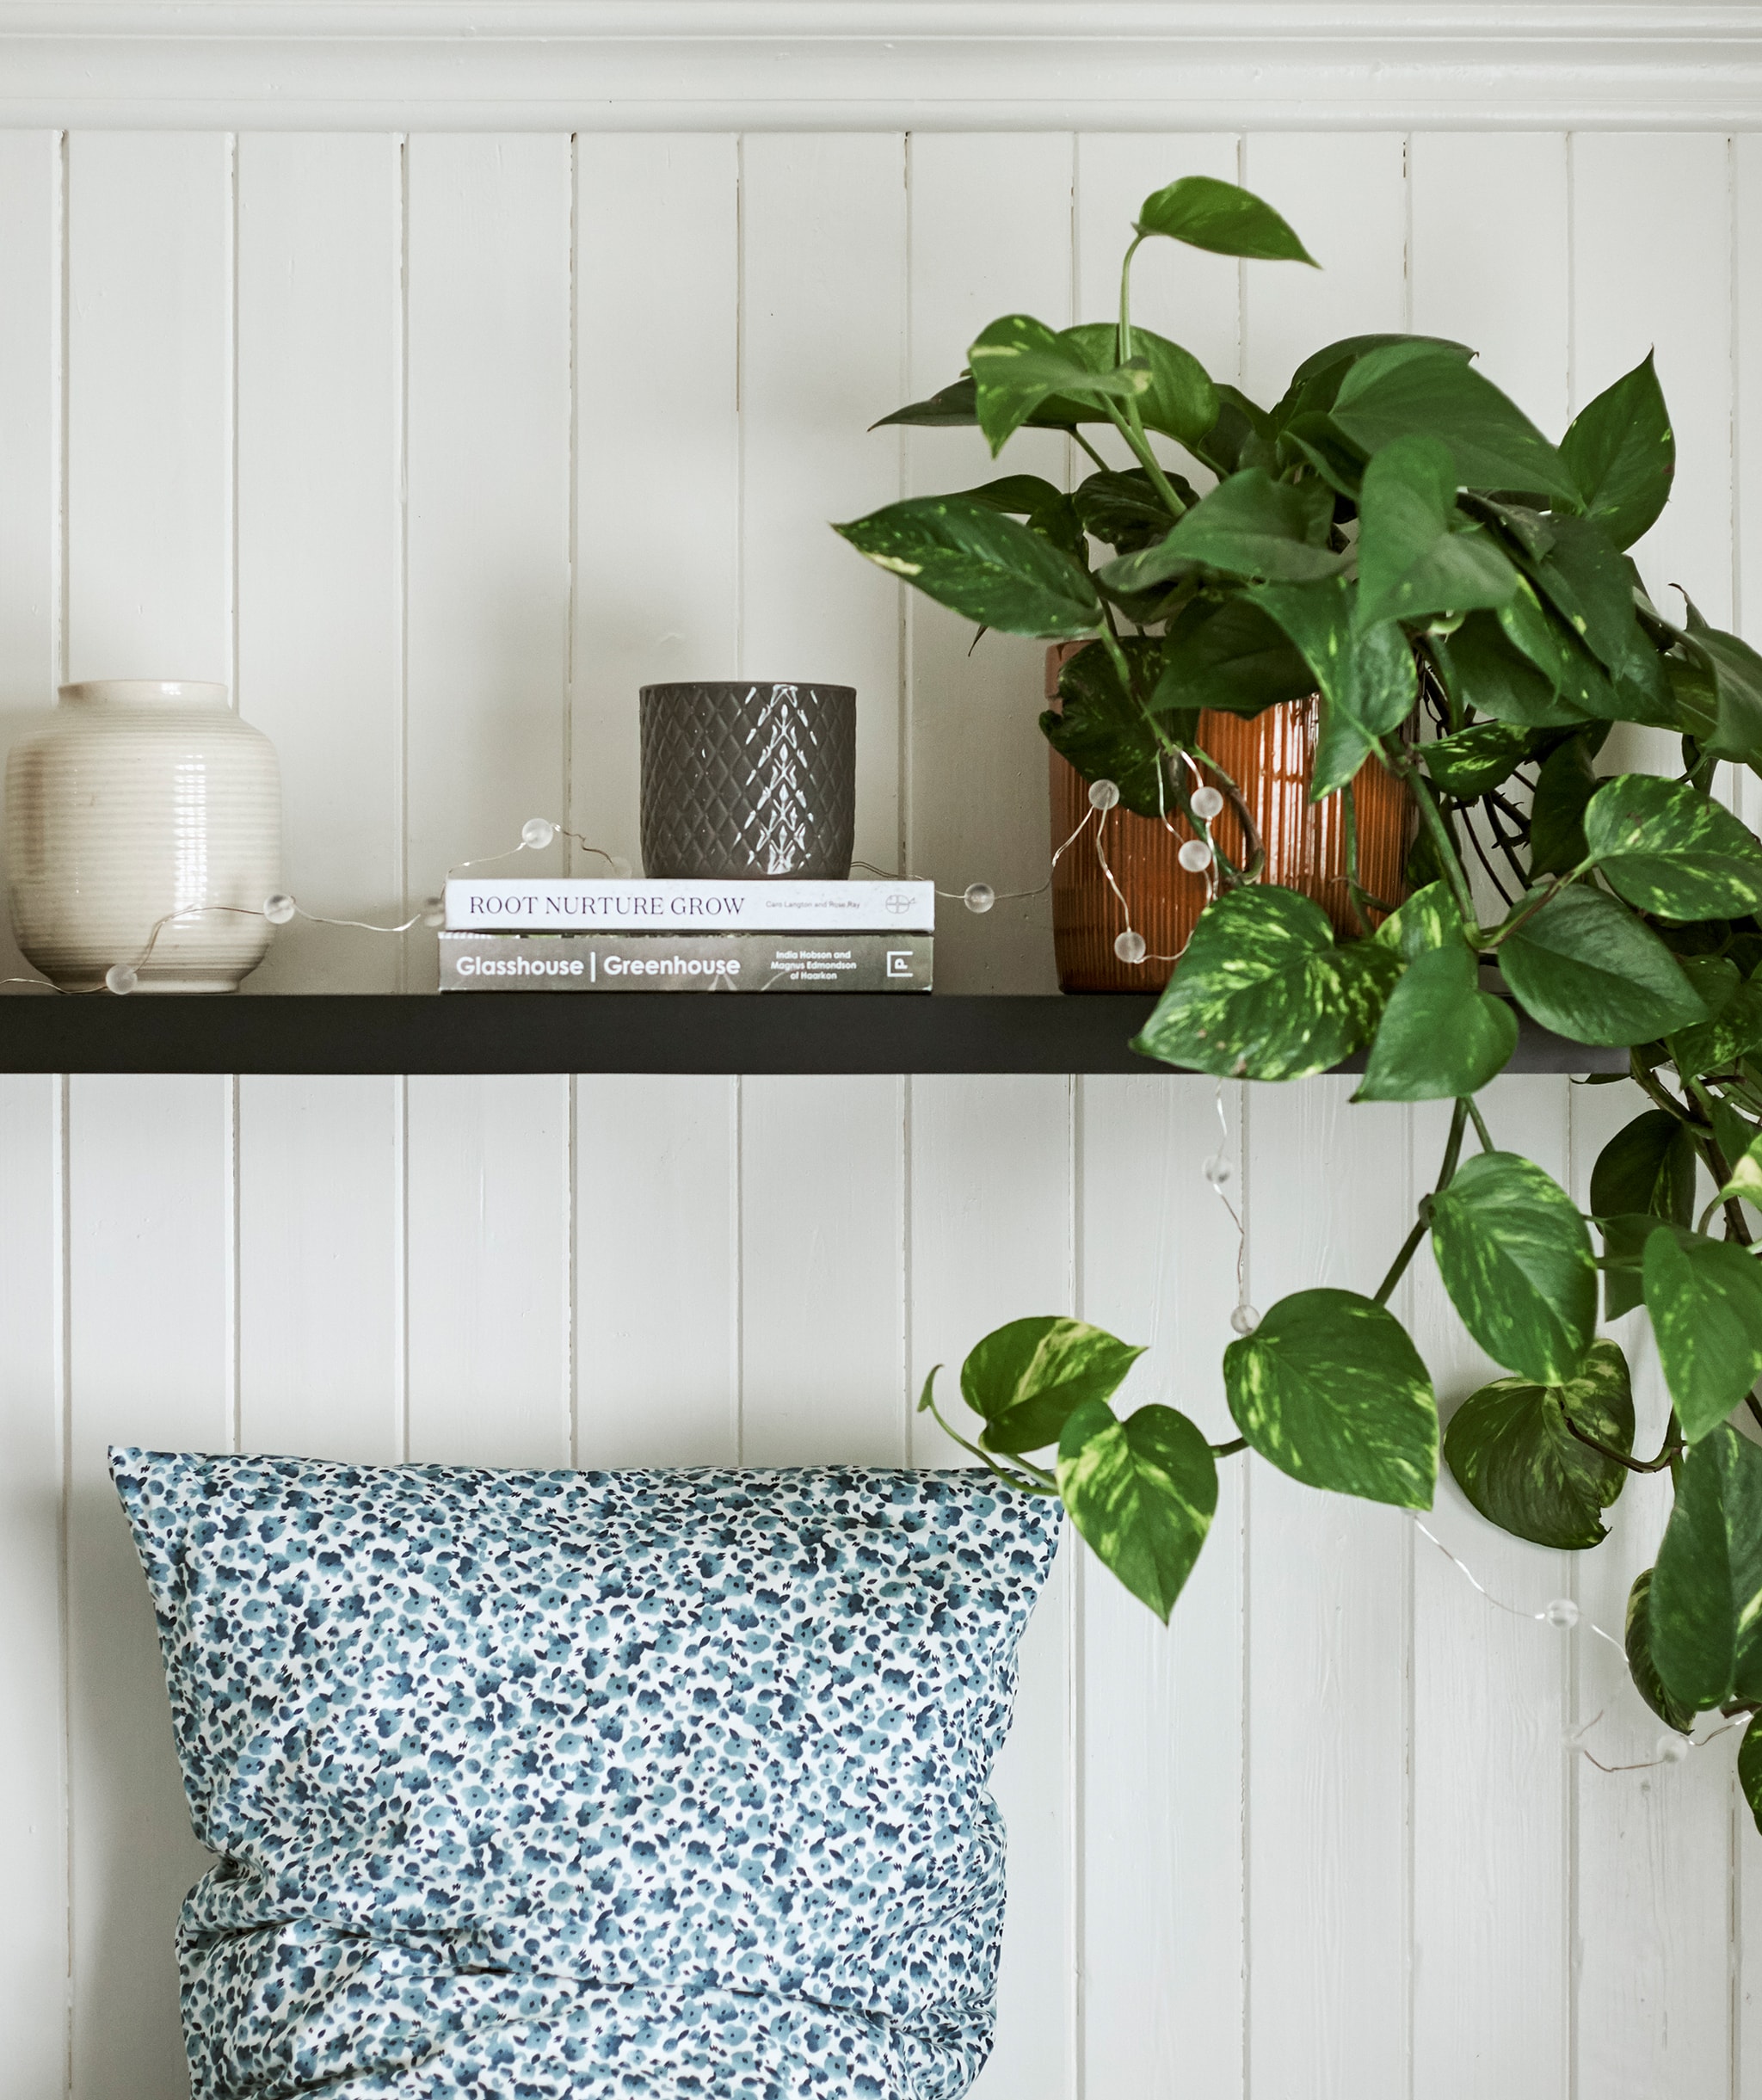 Sebuah tanaman ditampilkan menggunakan vas dan buku-buku di rak berwarna kayu gelap digantung di atas tempat tidur dengan bantal bermotif titik berwarna biru dan putih.